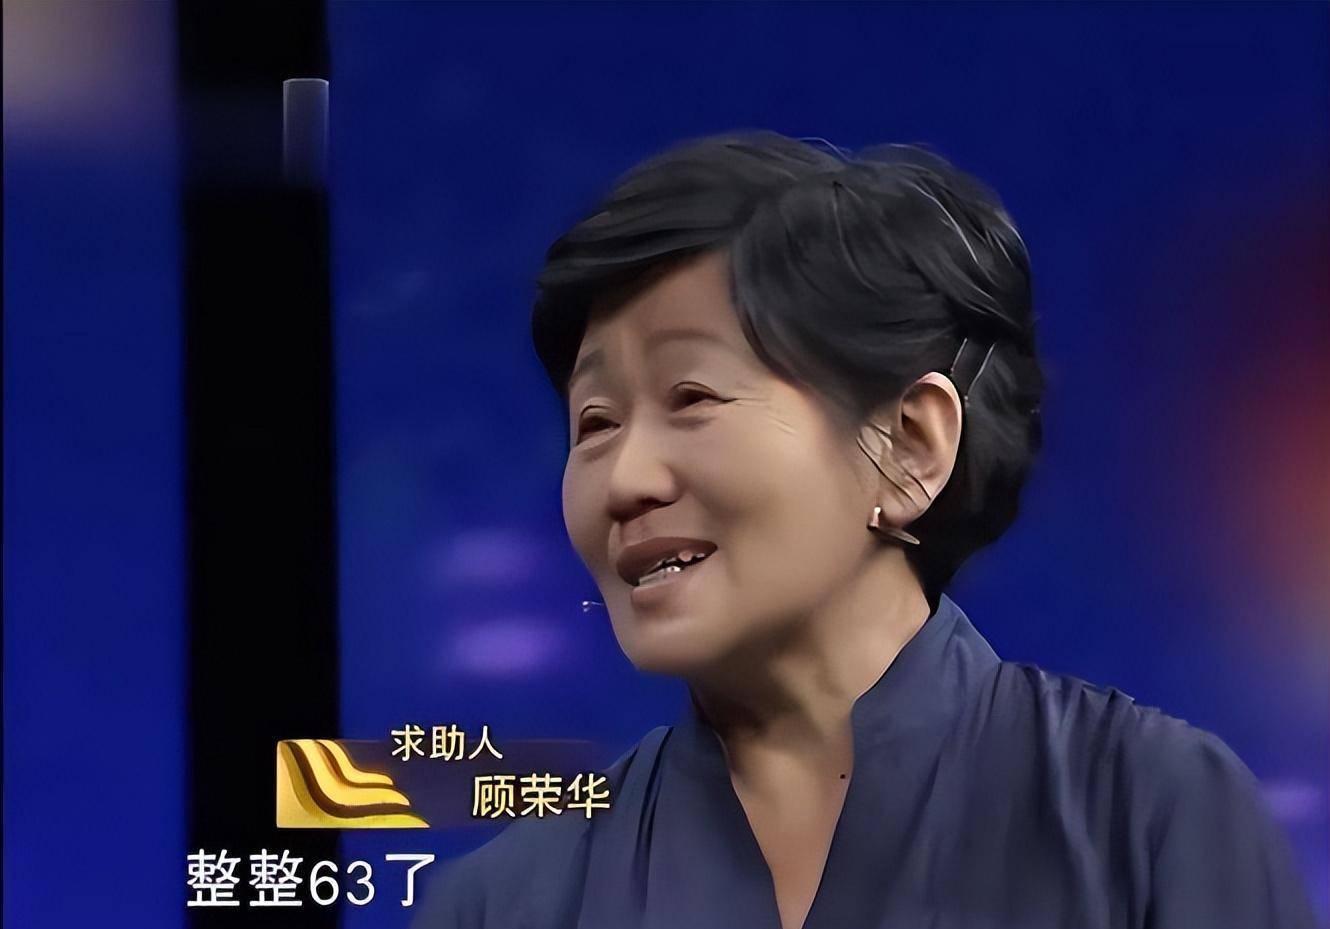 1976年,上海知青为前途狠心抛弃着,38年后成为富婆上电视寻女